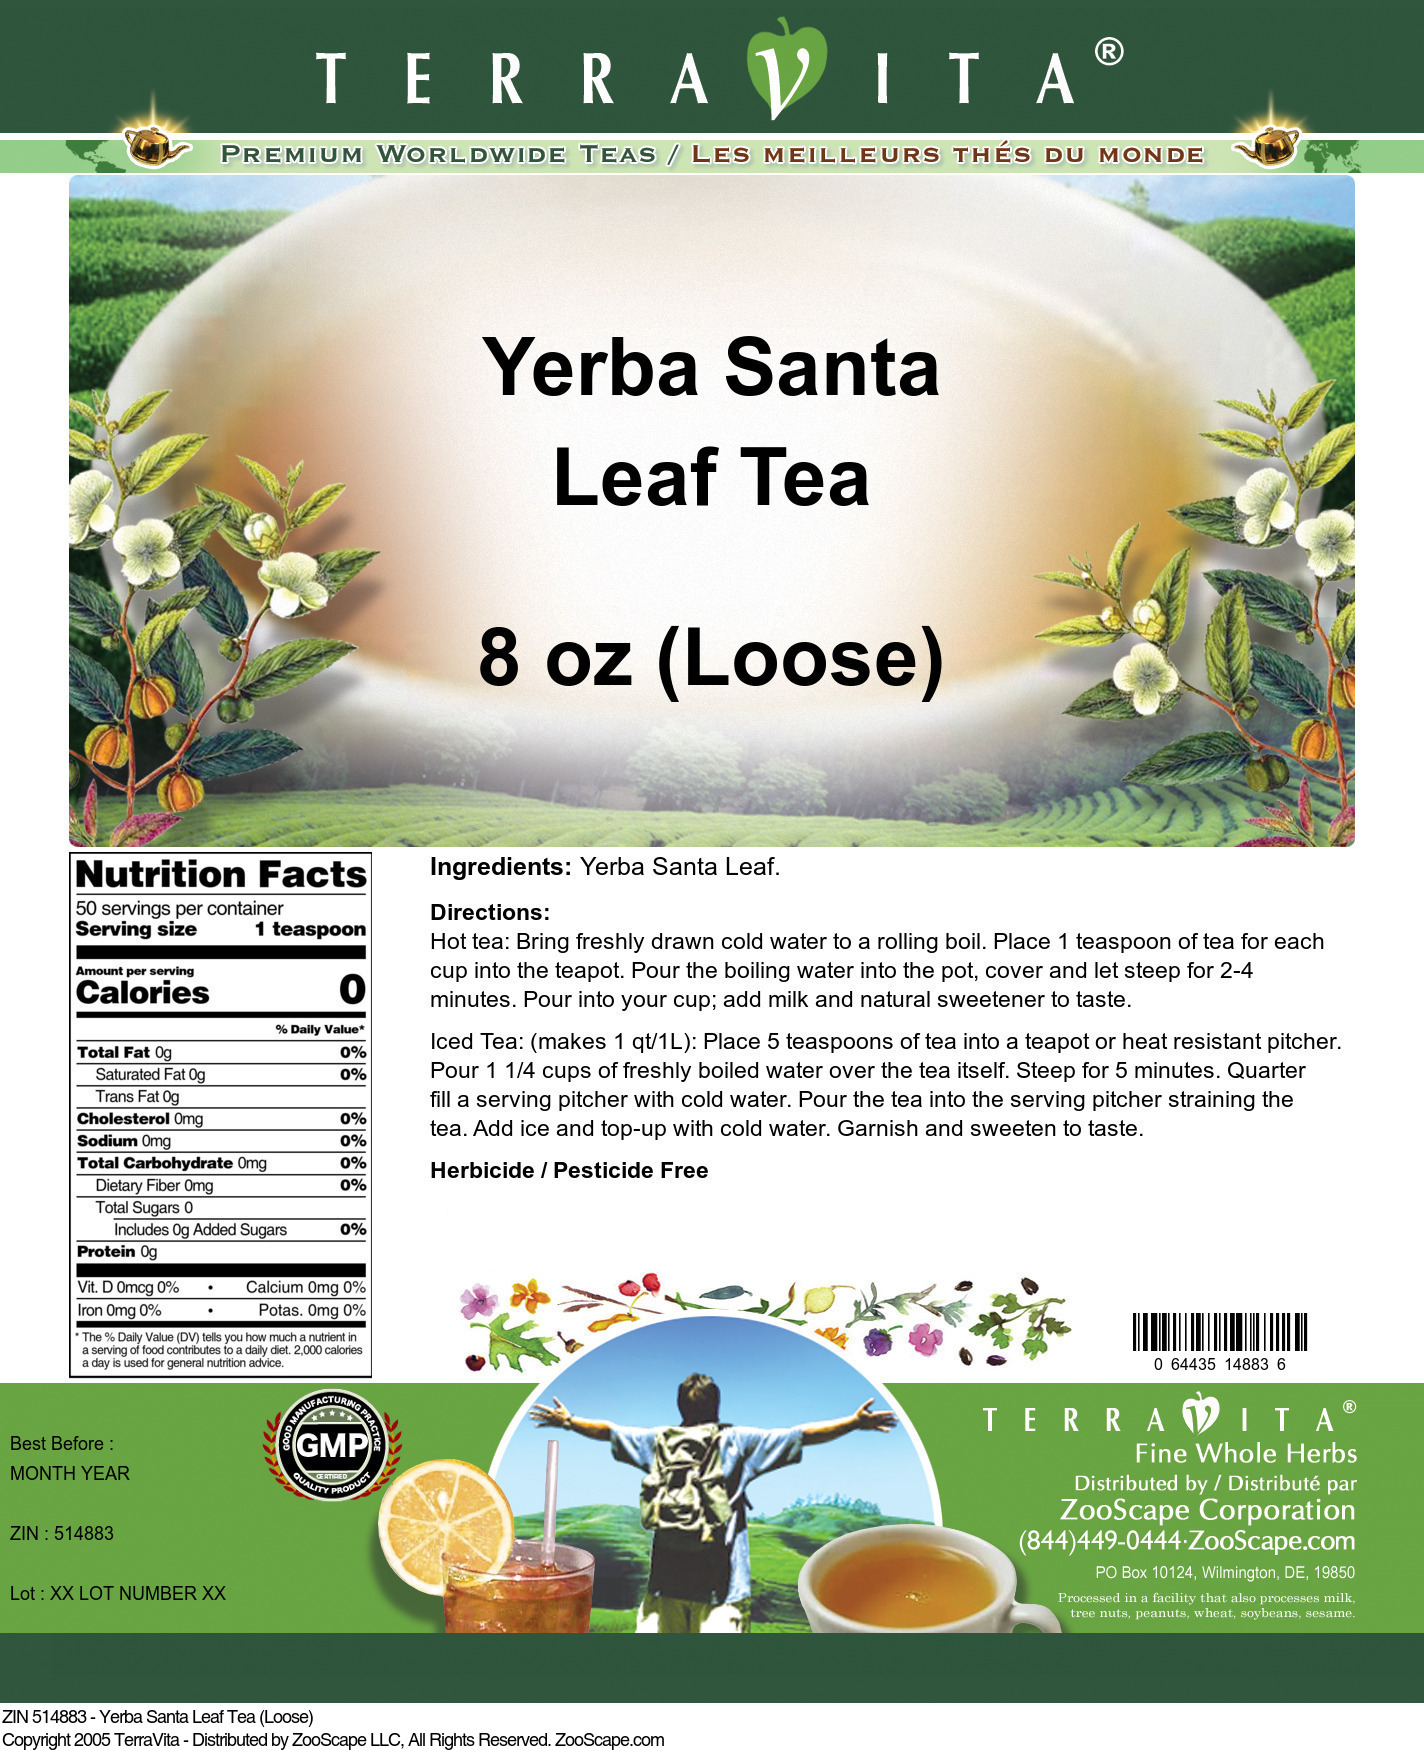 Yerba Santa Leaf Tea (Loose) - Label